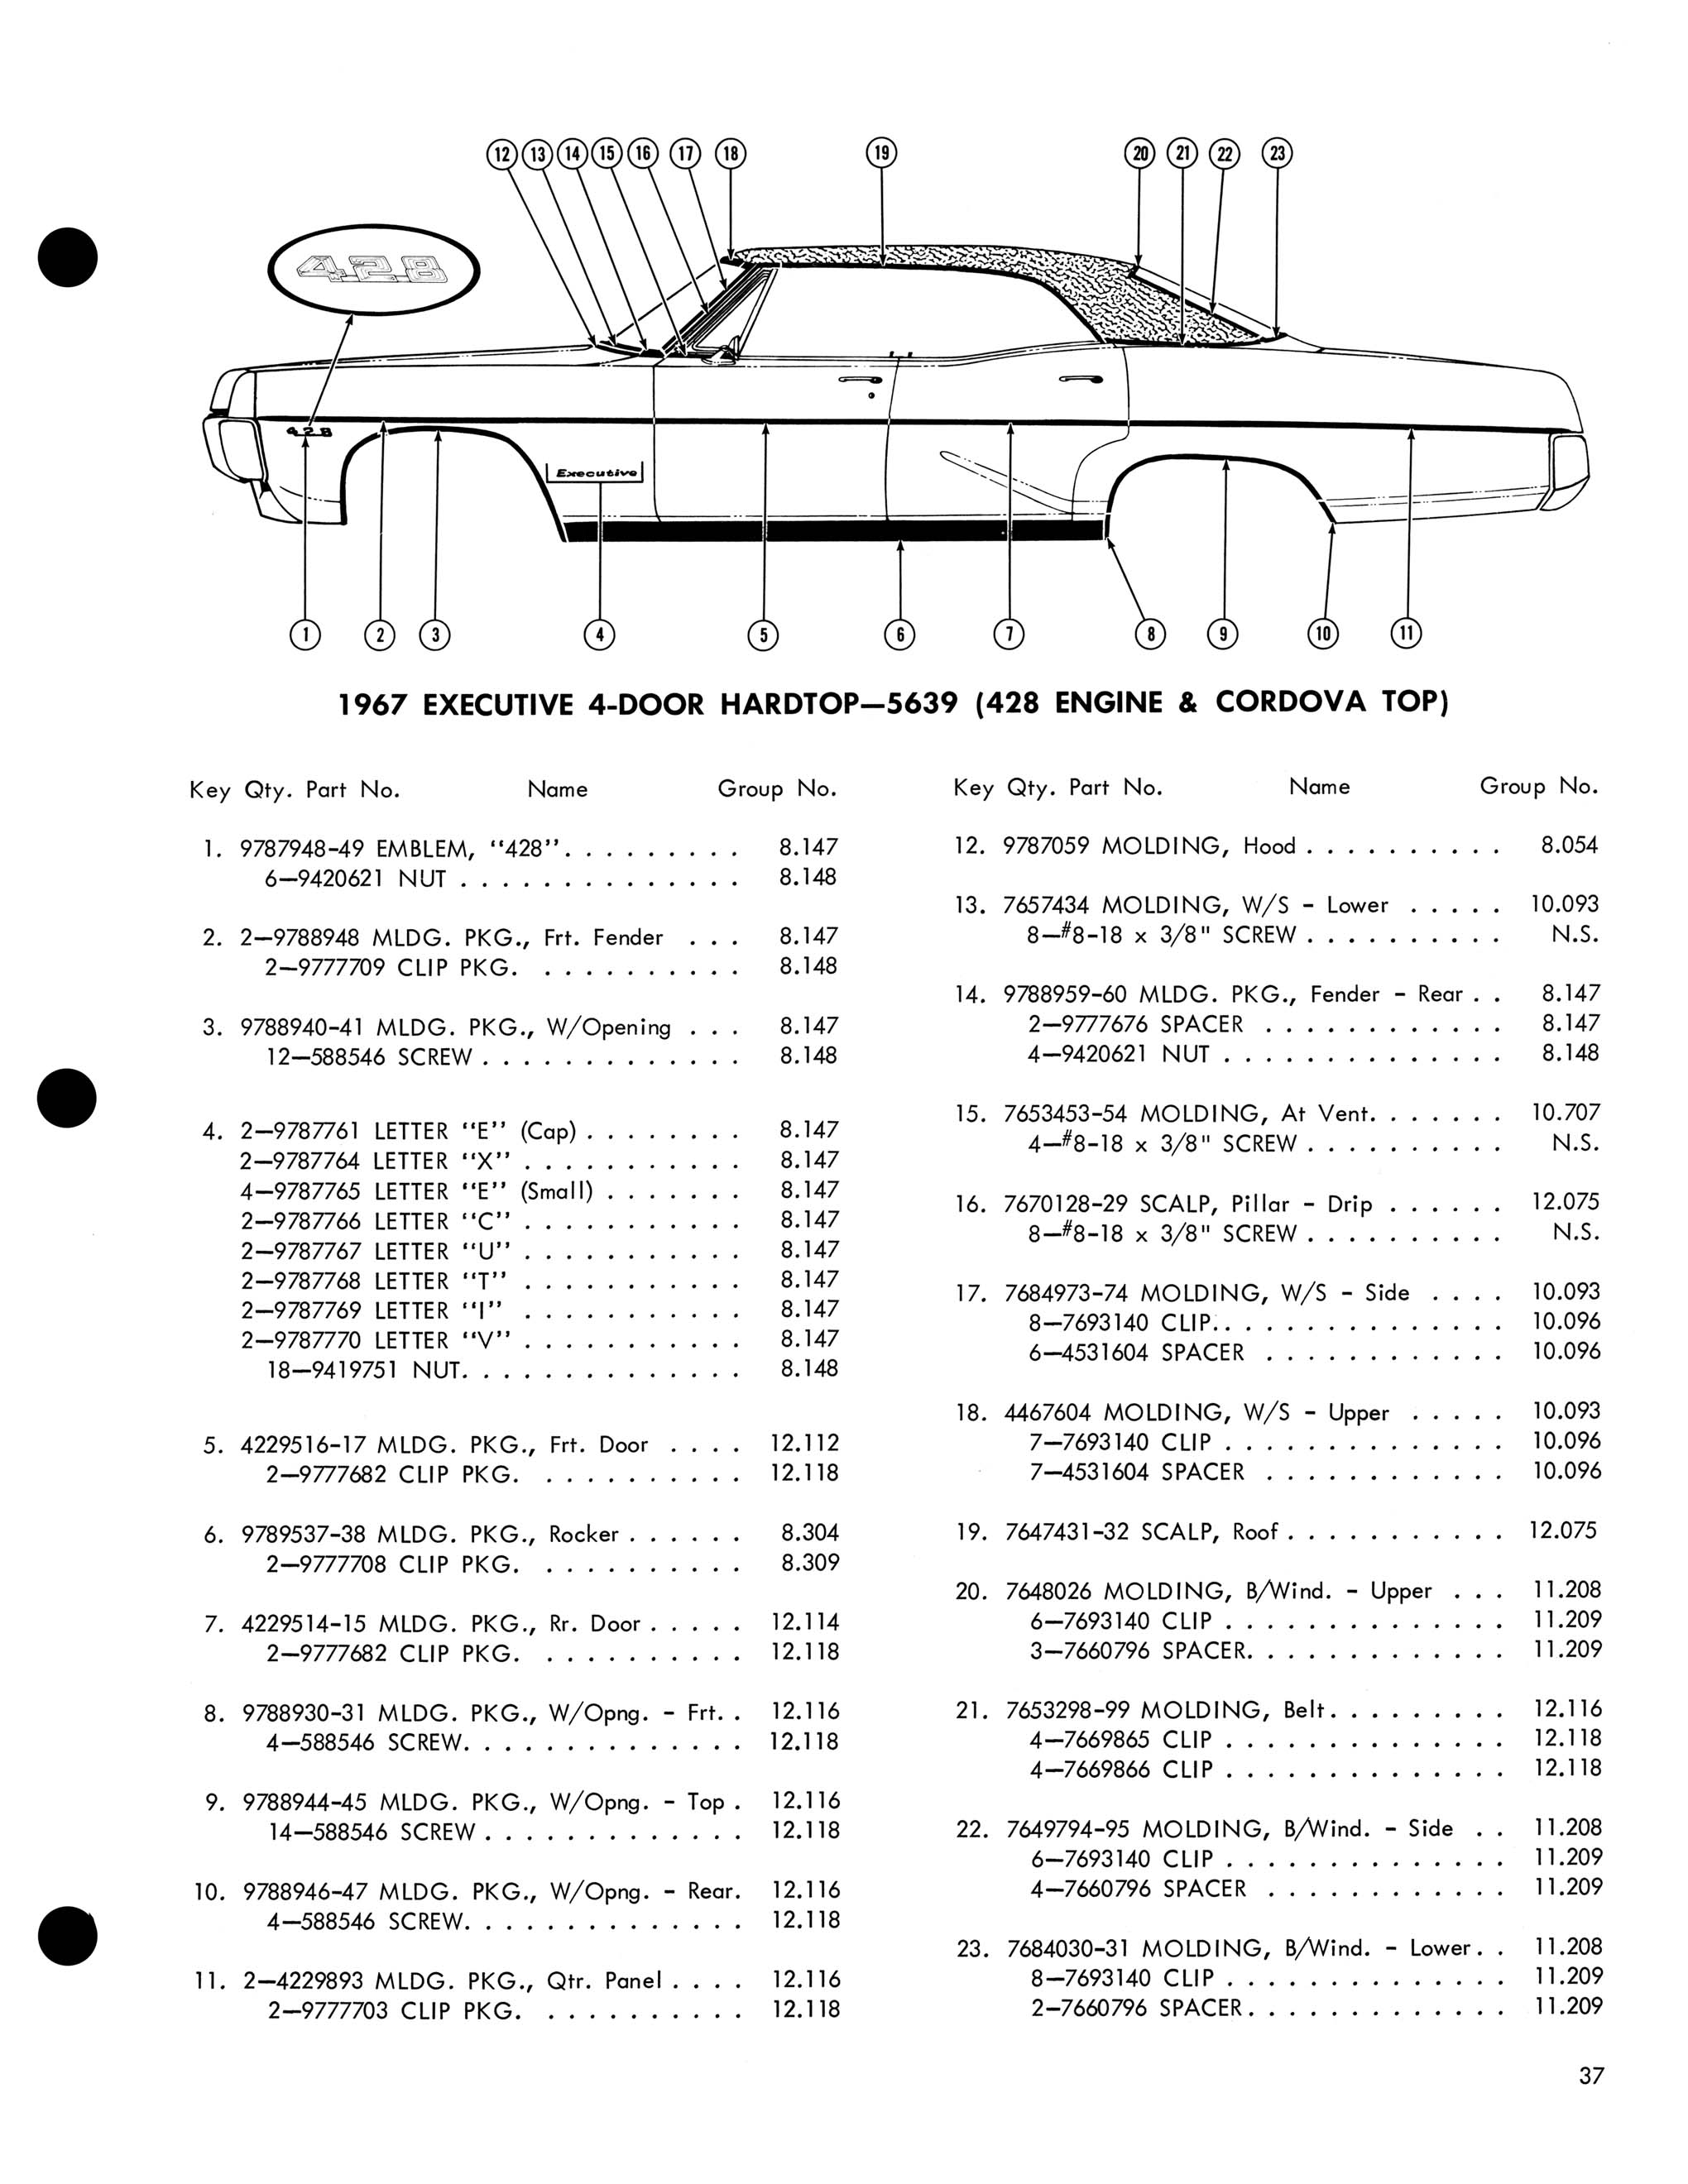 1967 Pontiac Molding and Clip Catalog-37